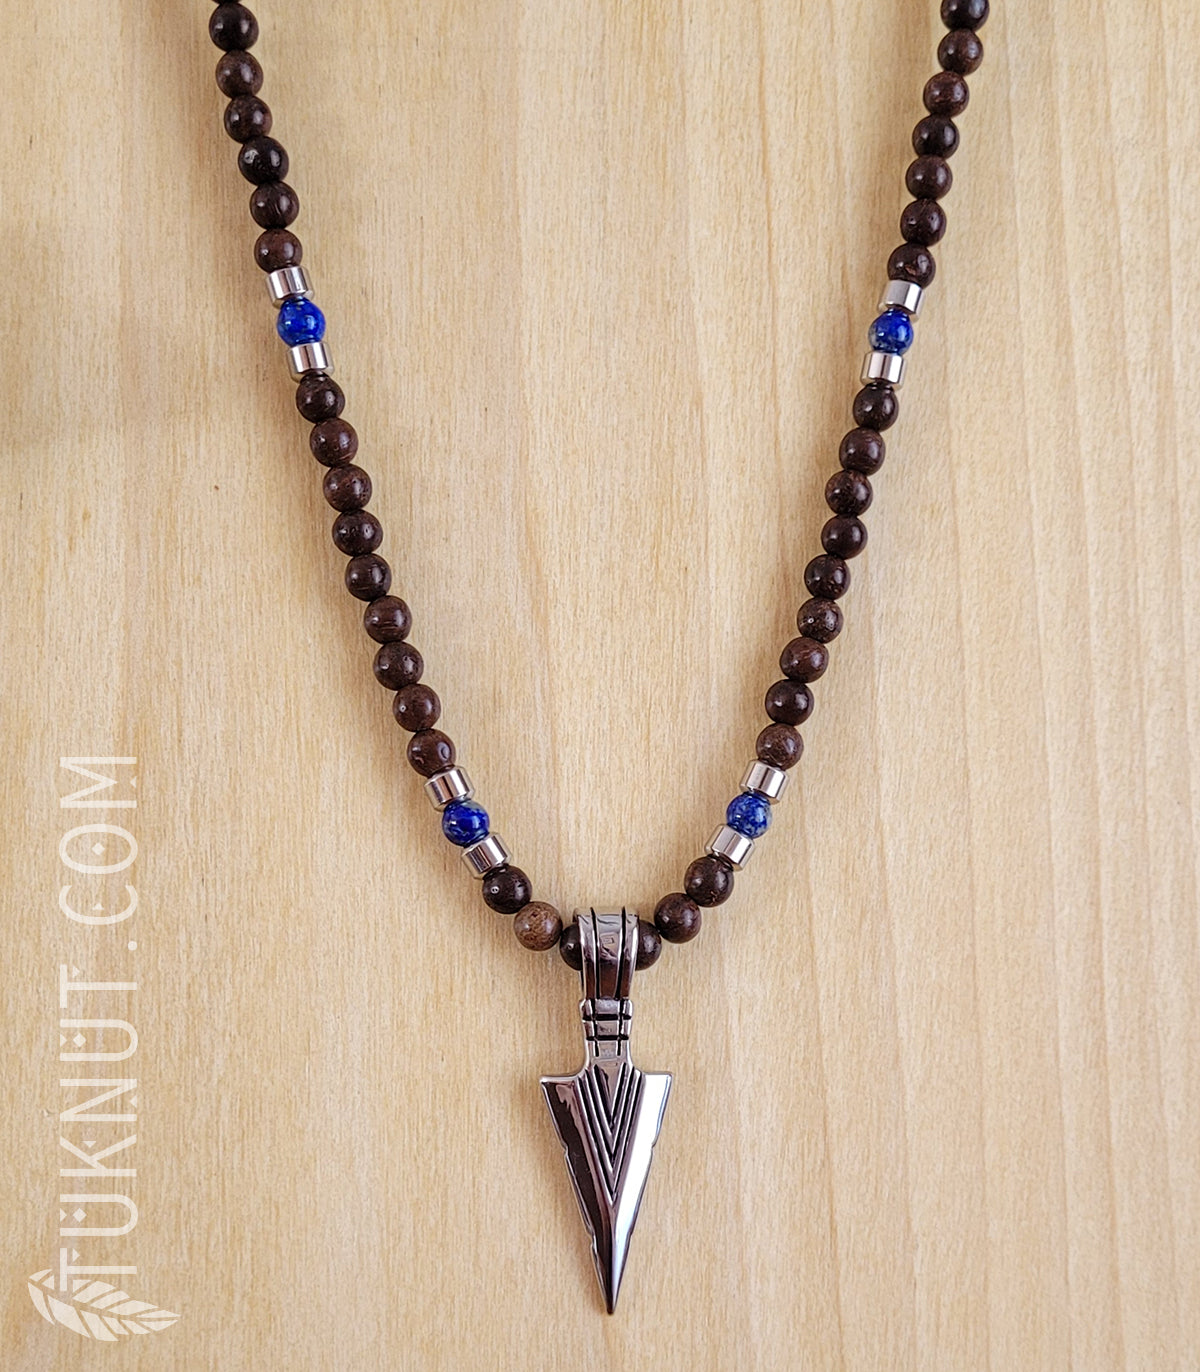 Collier d'inspiration autochtone avec pendentif (pointe de flèche) en acier inoxydable avec bois et lapis lazuli (couleurs : brun, bleu foncé et argent) TUKNUT